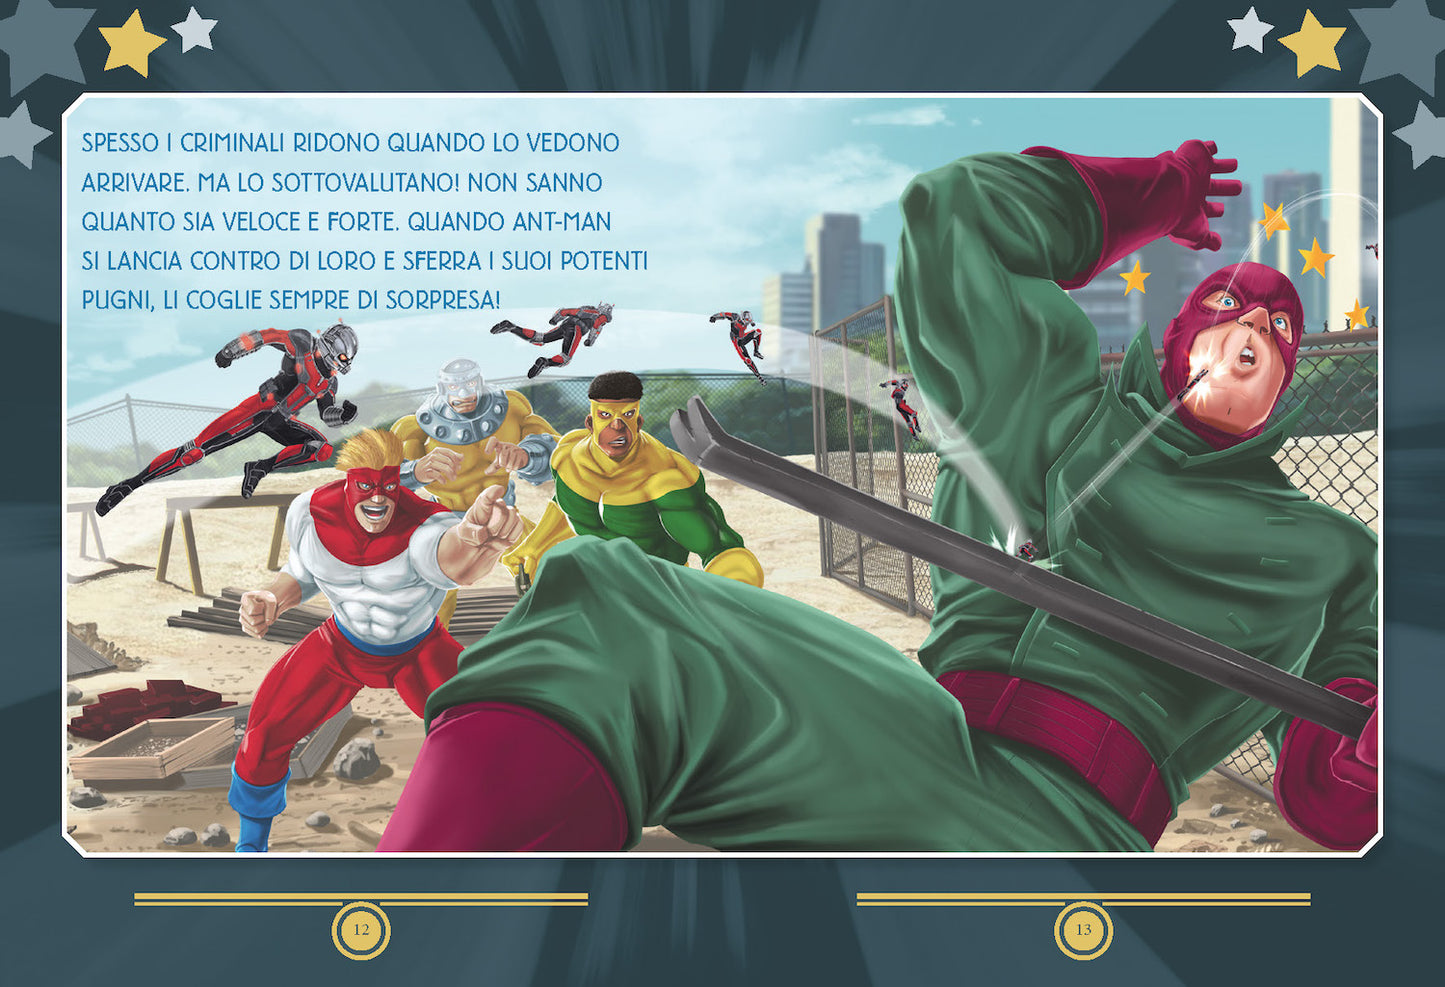 Marvel Racconti di supereroi dai poteri straordinari - Storie da 5 minuti